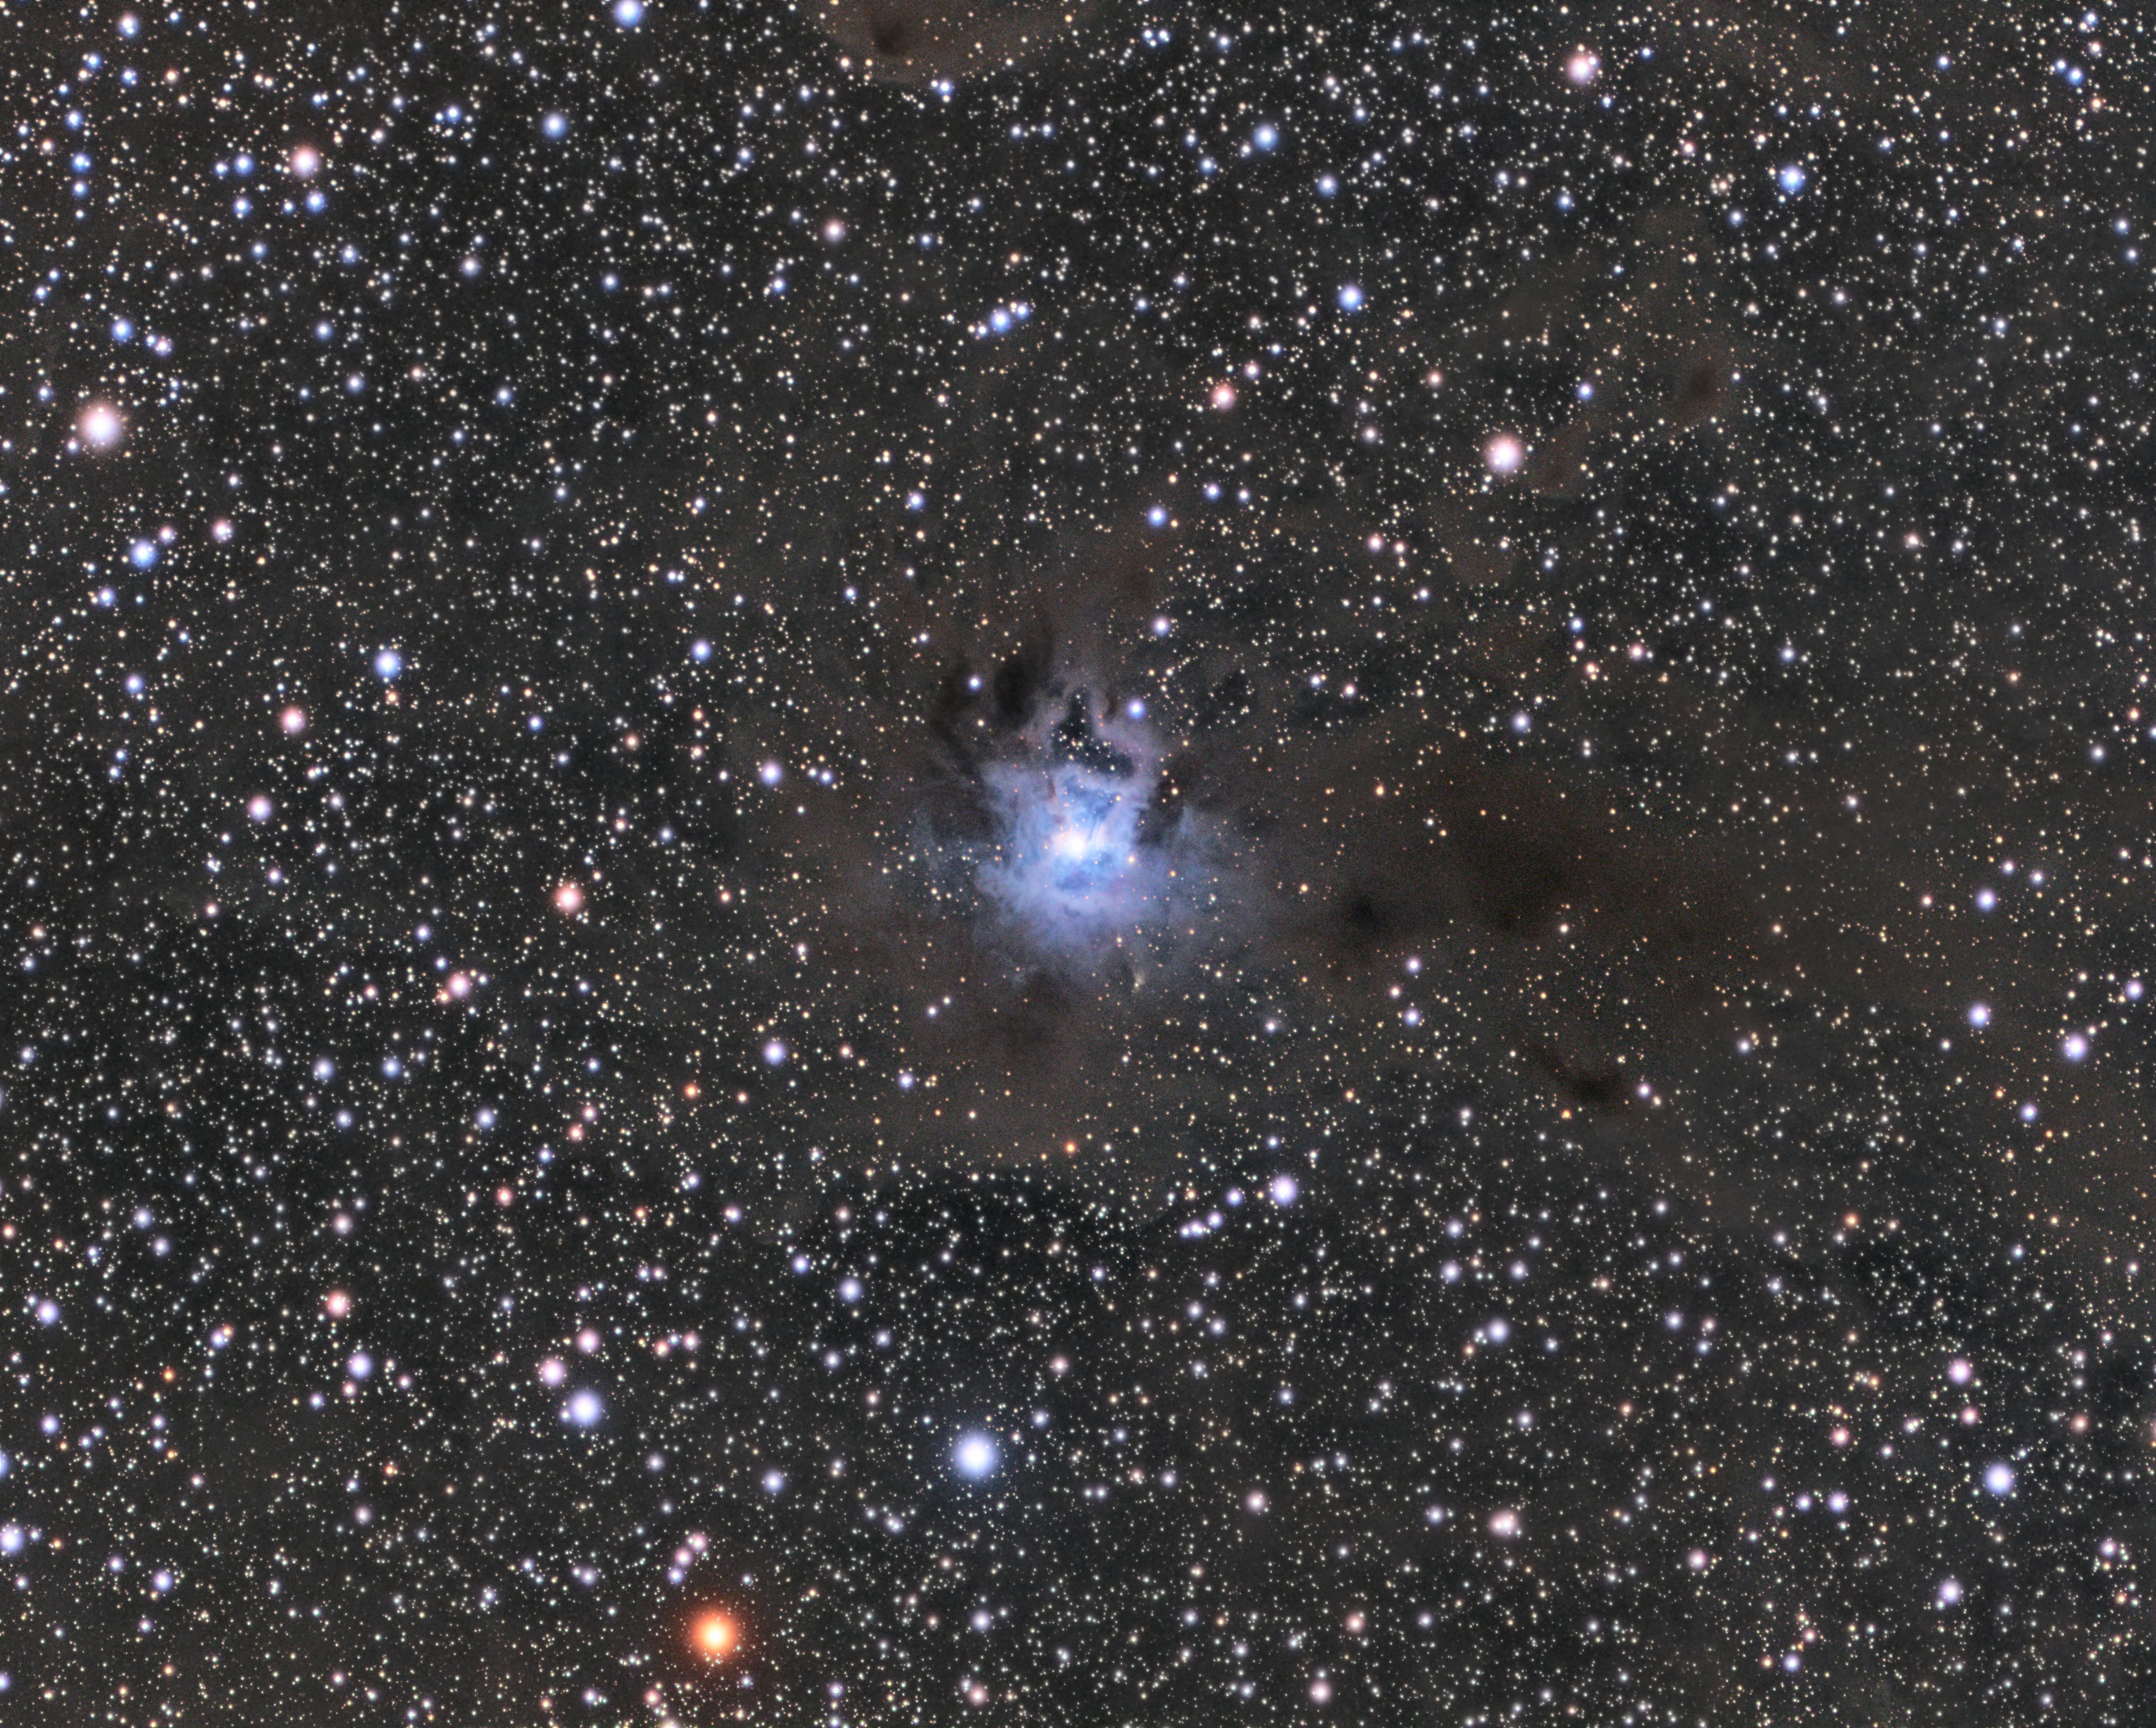 22 - NGC 7023, The Iris Nebula